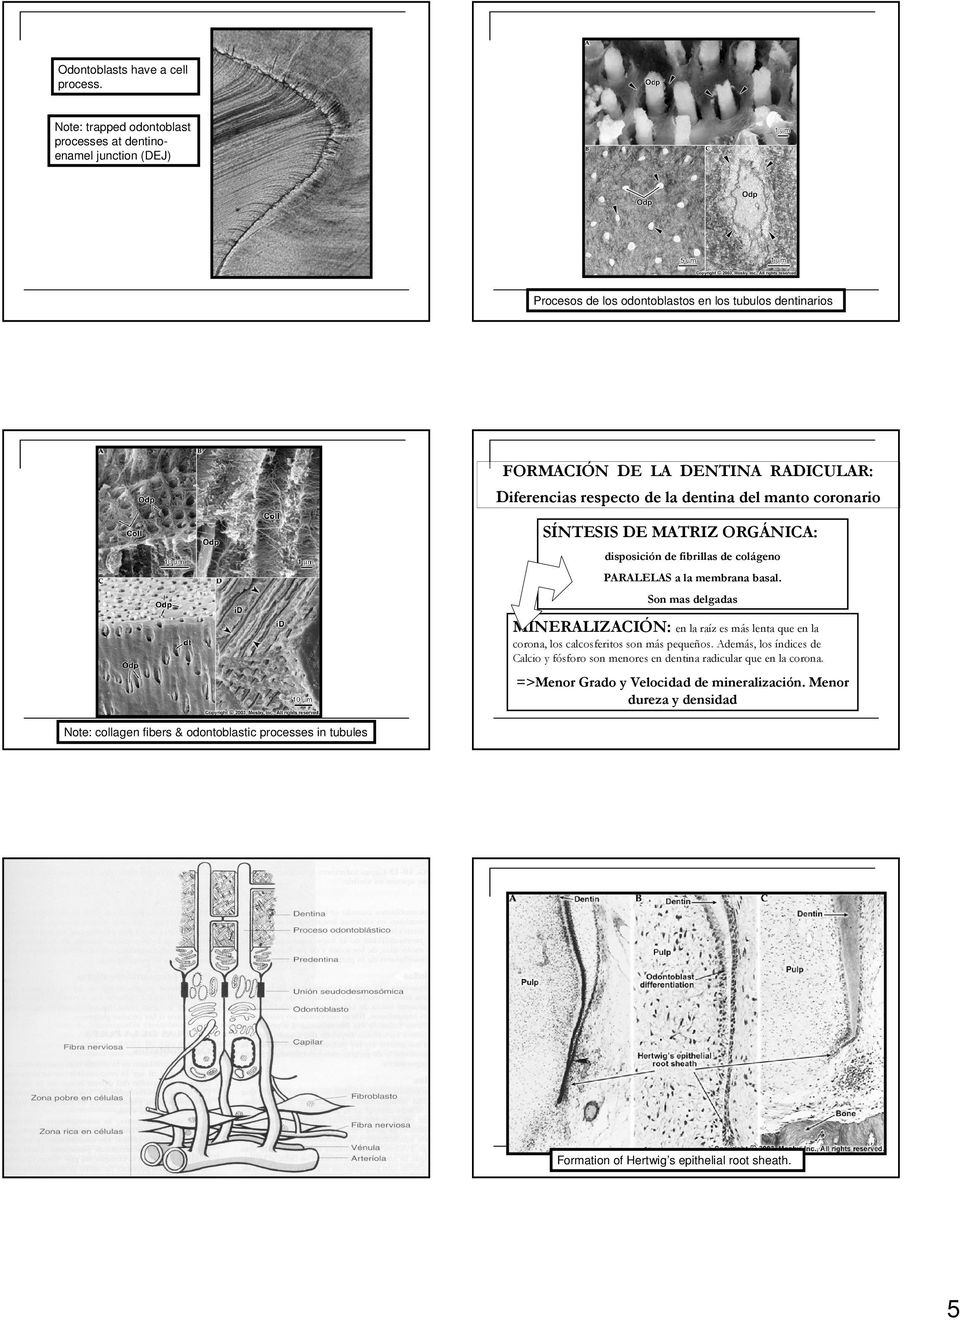 de la dentina del manto coronario SÍNTESIS DE MATRIZ ORGÁNICA: disposición de fibrillas de colágeno PARALELAS a la membrana basal.